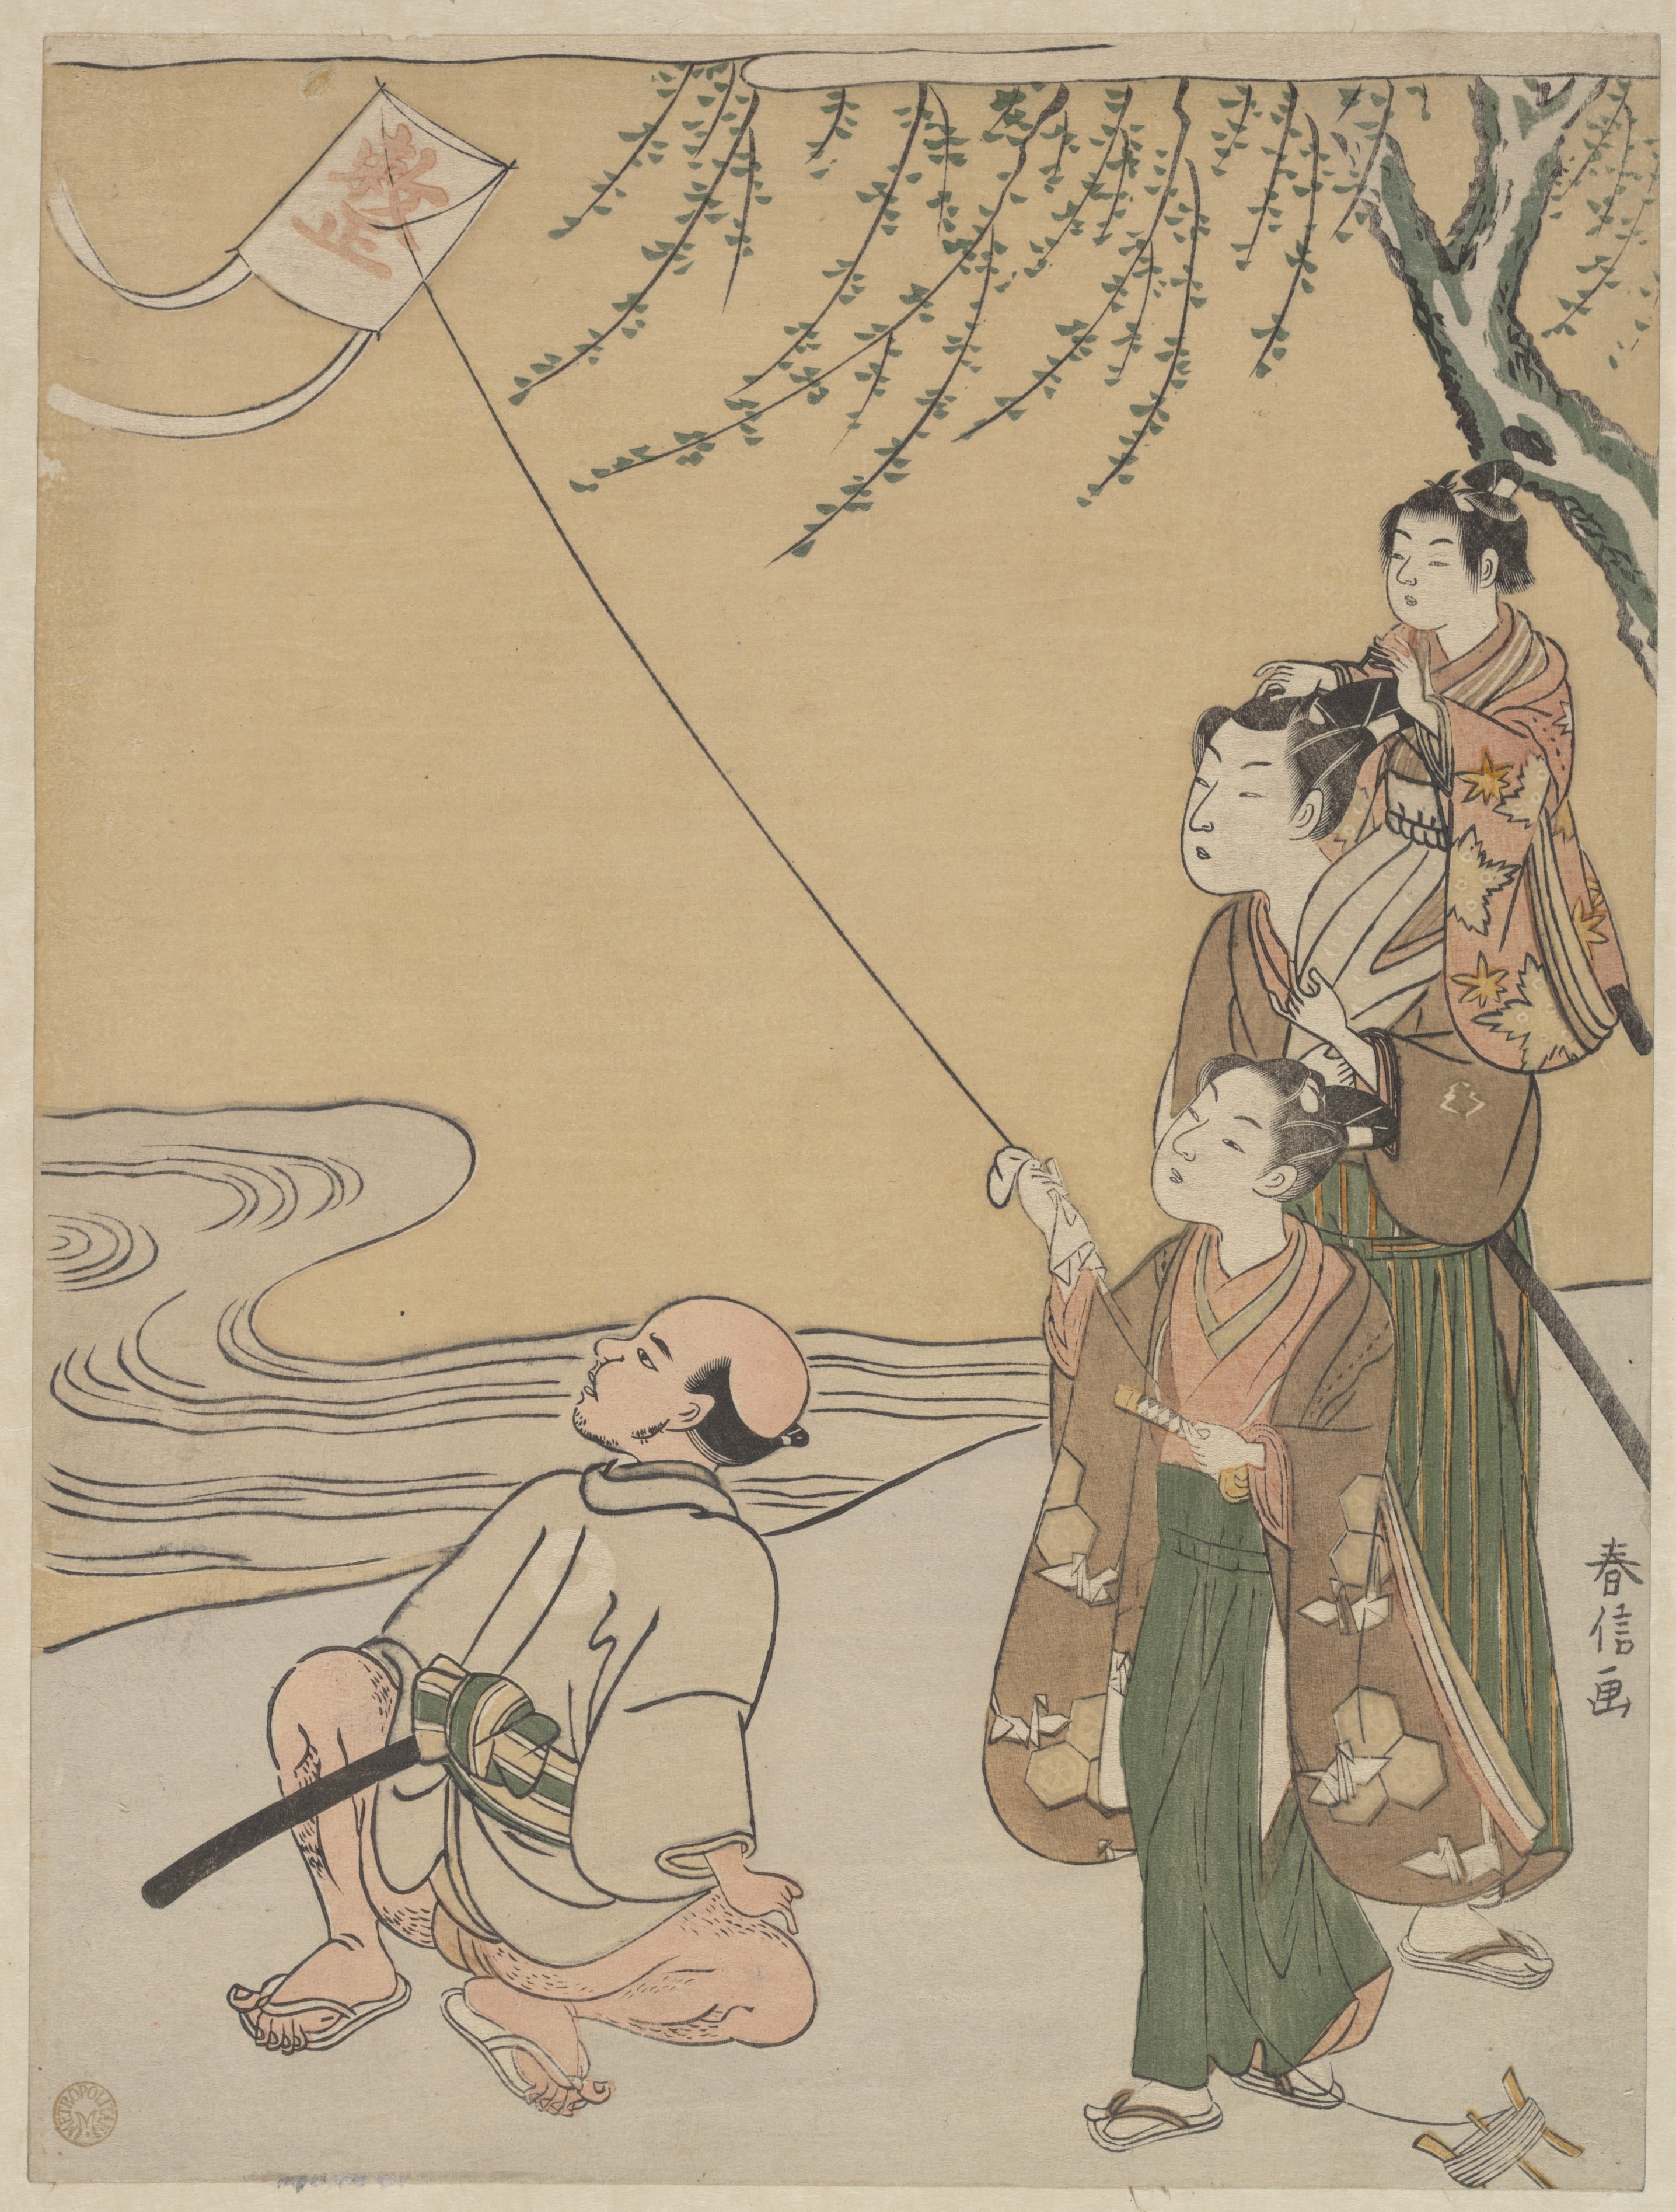 Pouštění draků by Suzuki Harunobu - 1766 - 27.3 x 20.6 cm 